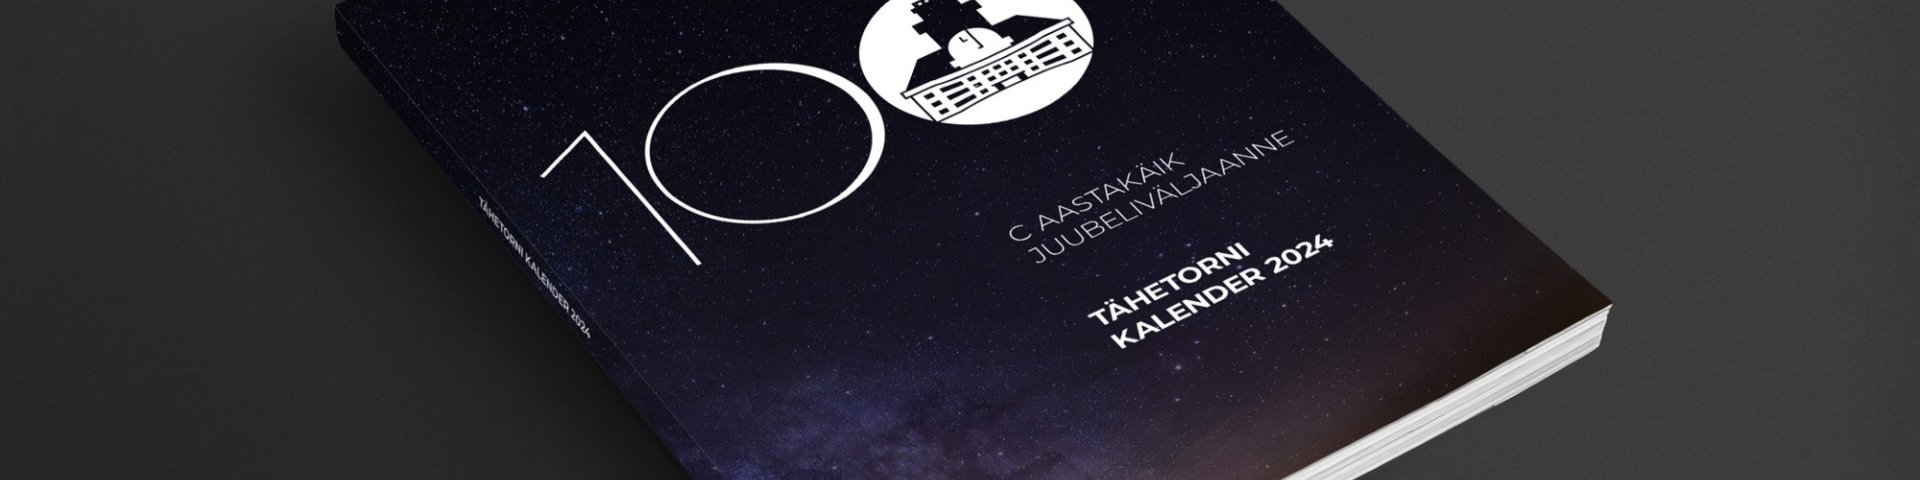 Tähetorni Kalender - Tartu observatoorium